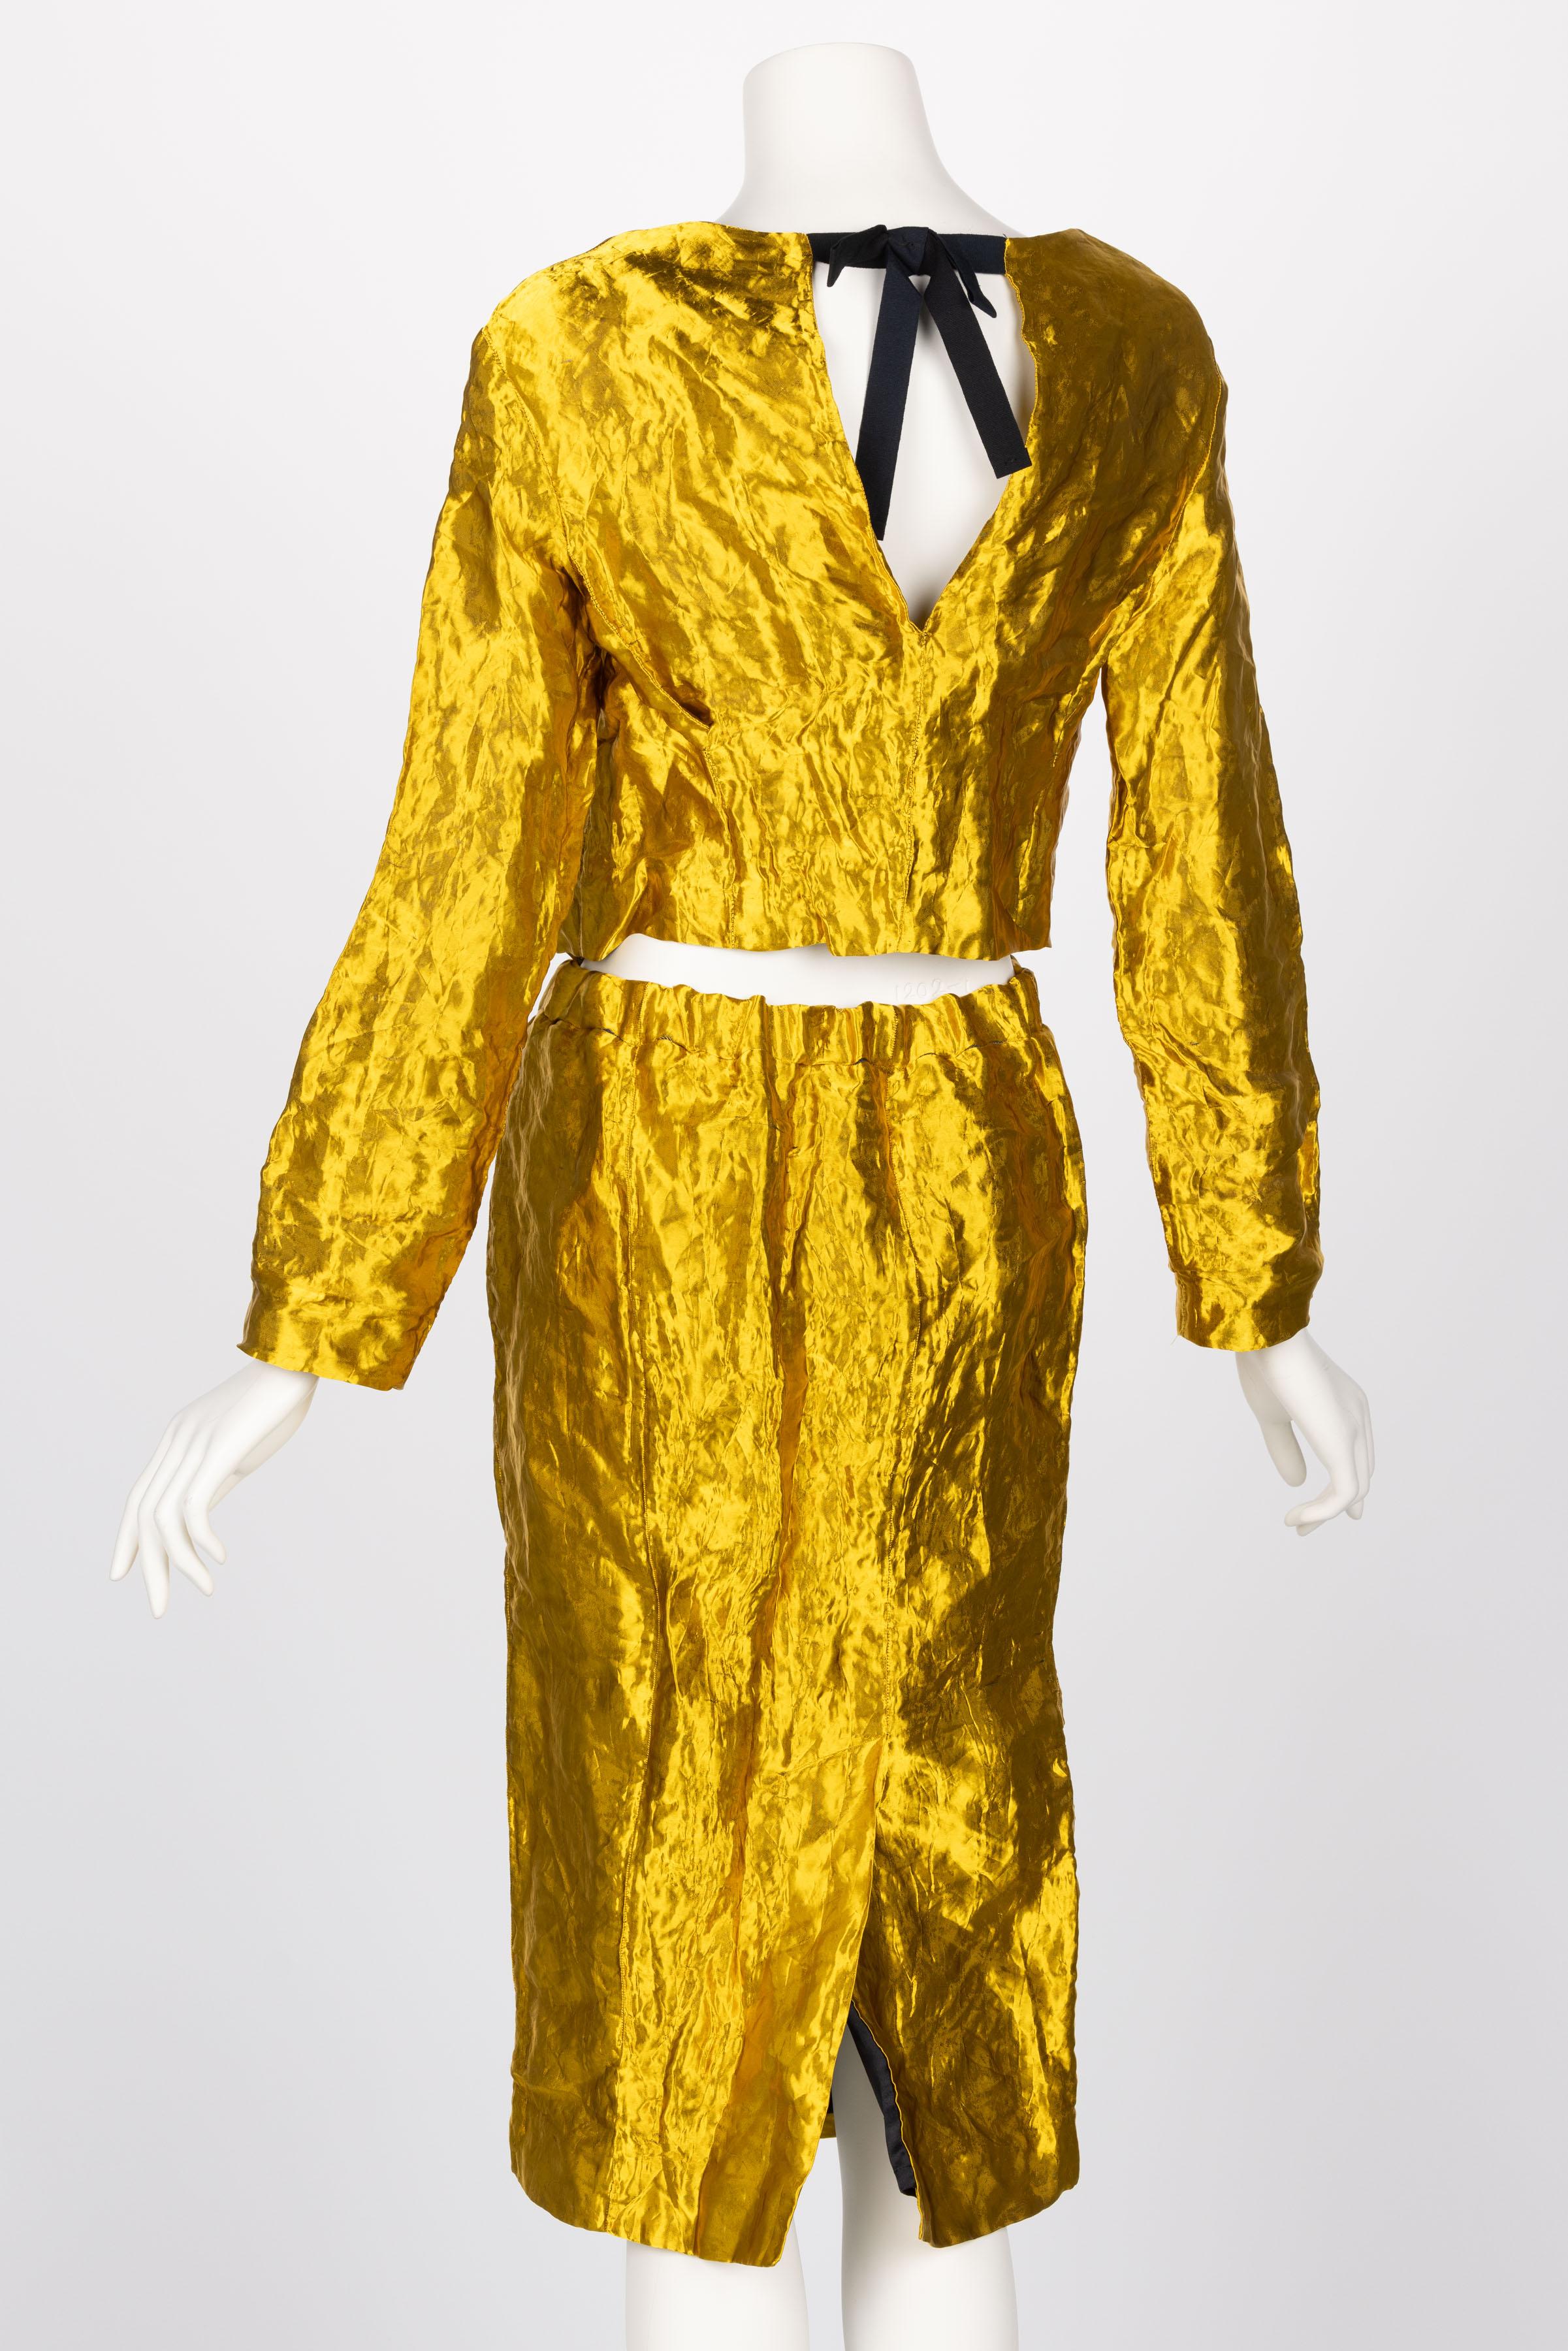 Prada Gold Metal Jacket Top & Skirt Set Spring 2009 1